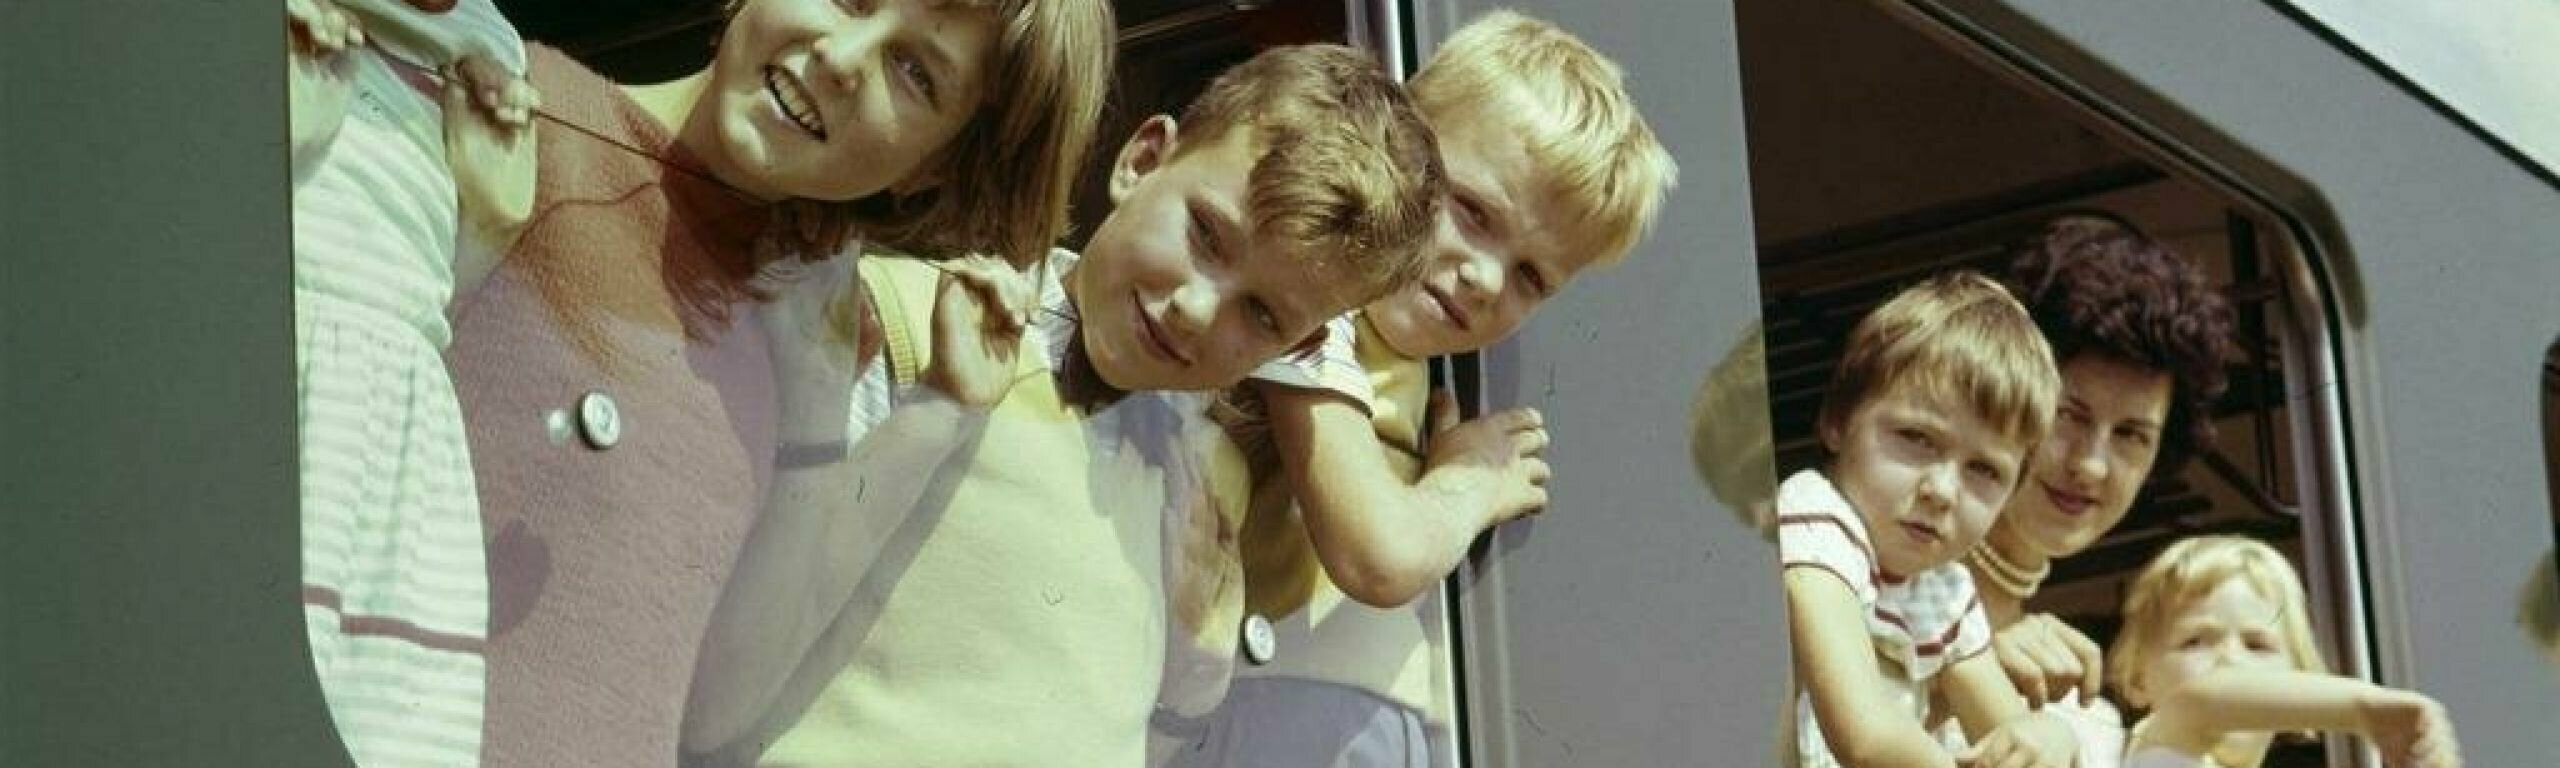 Bambini che guardano dal finestrino del treno